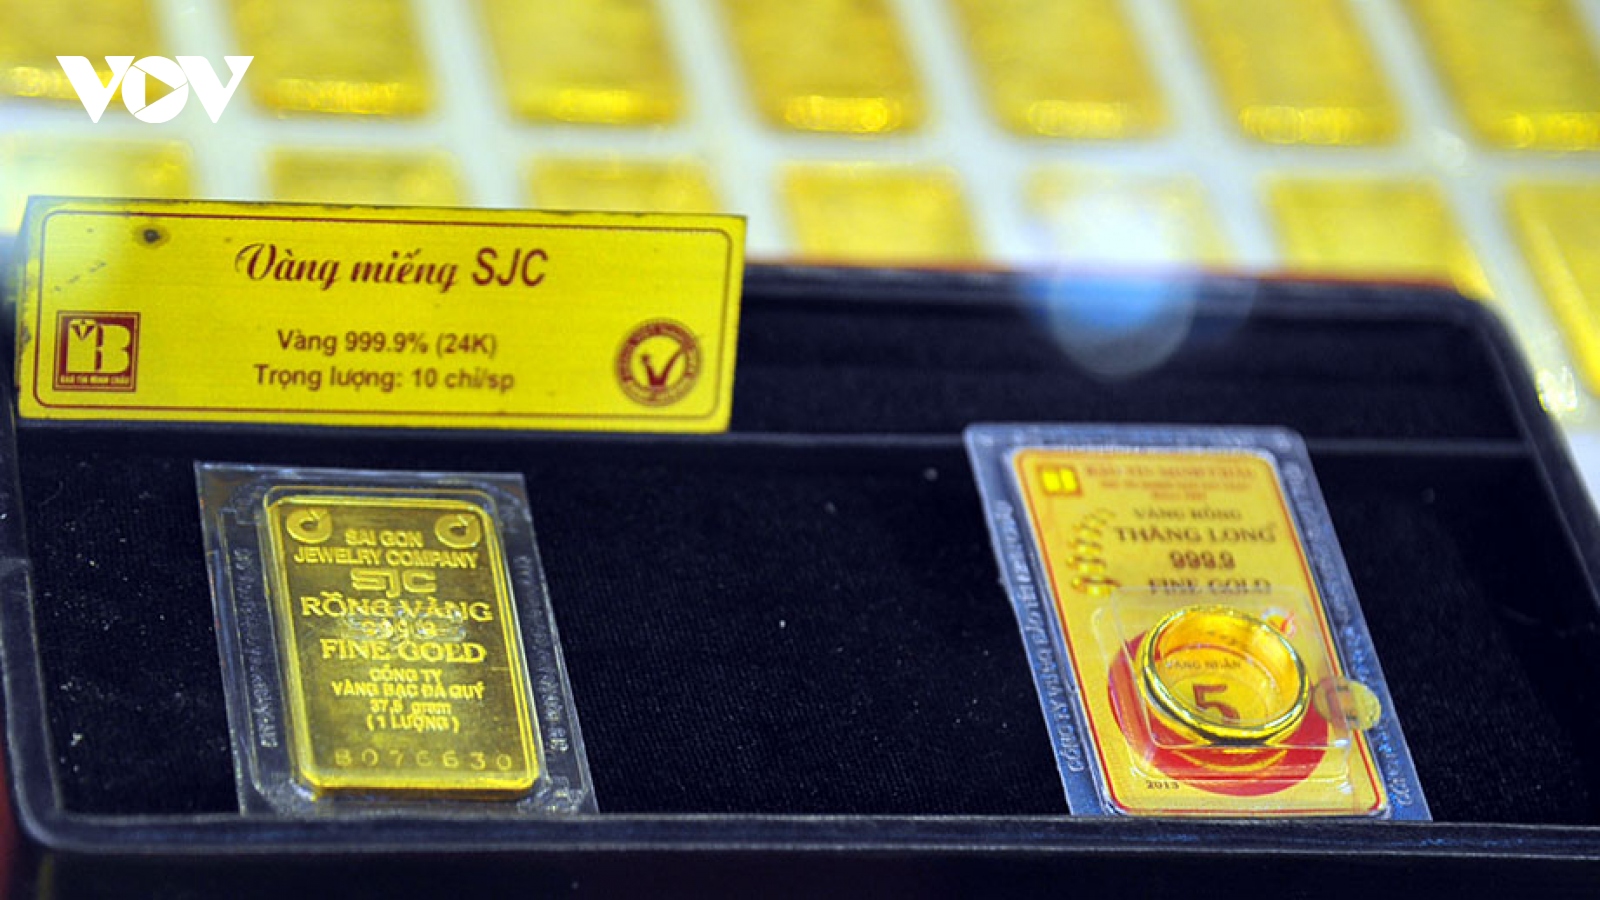 Giá vàng SJC cao hơn gần 7 triệu đồng/lượng so với giá vàng thế giới